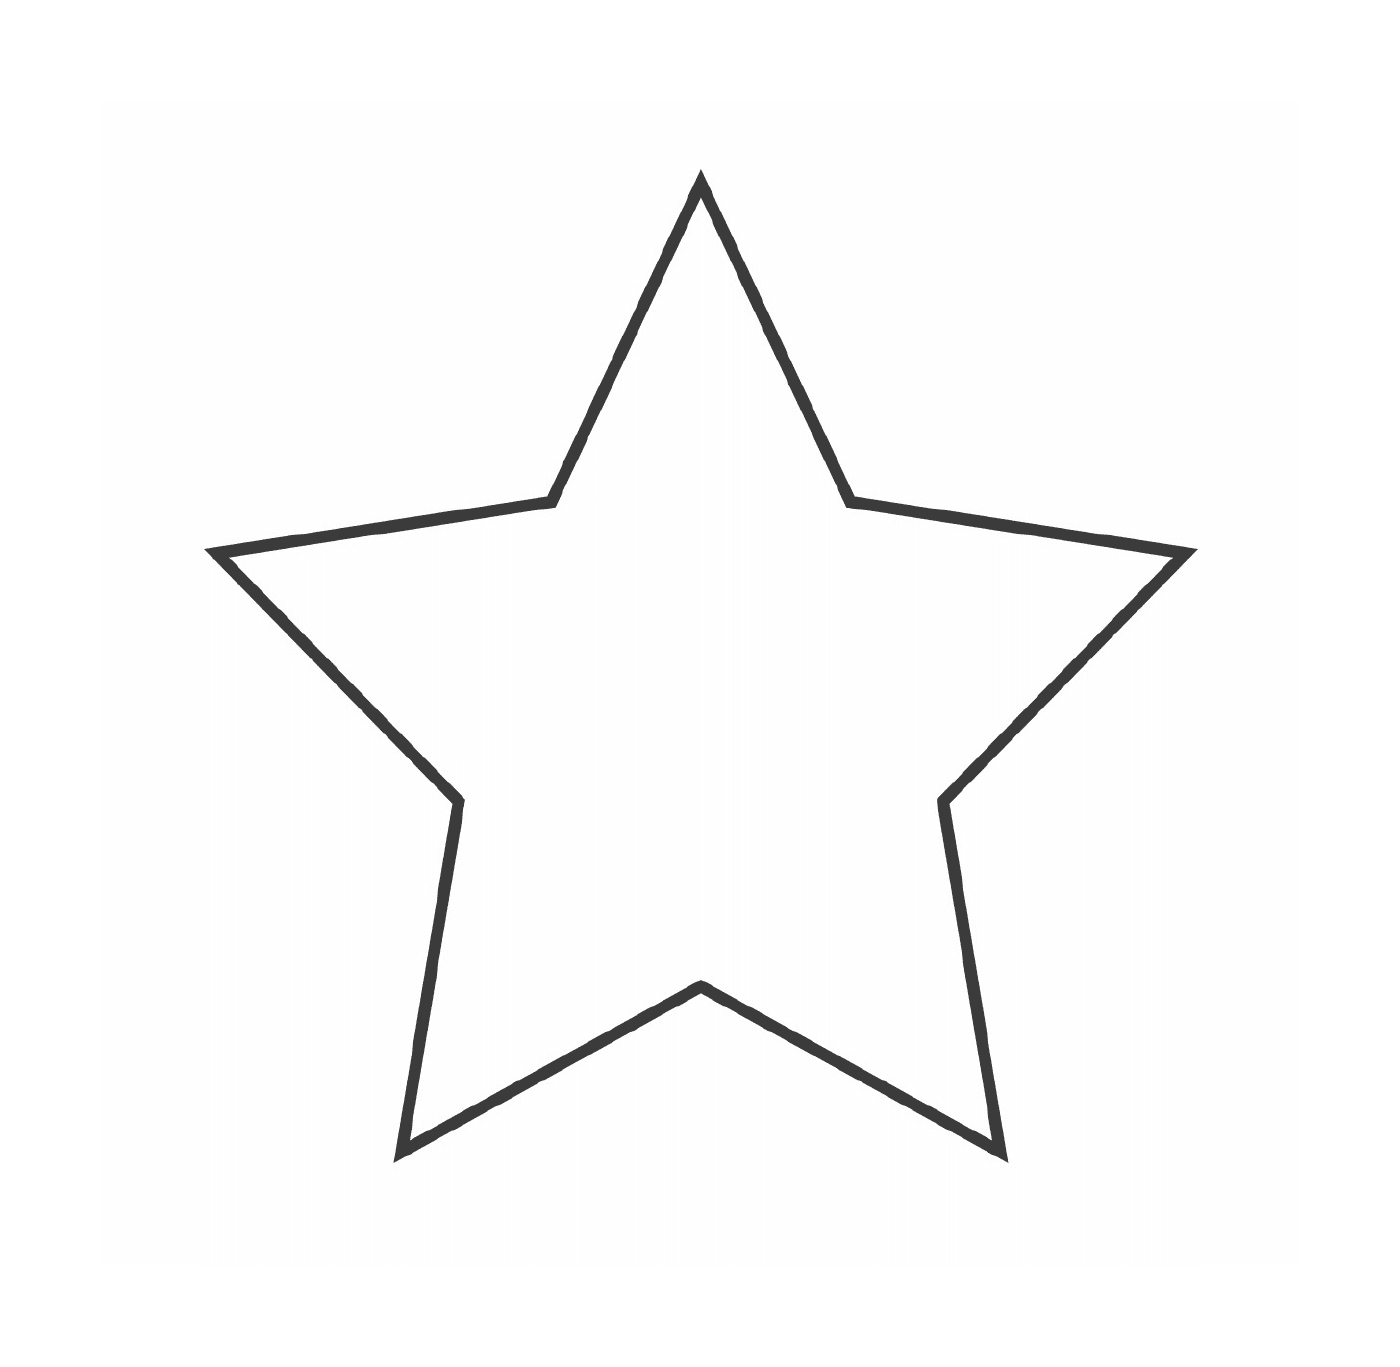  Una stella con cinque rami 